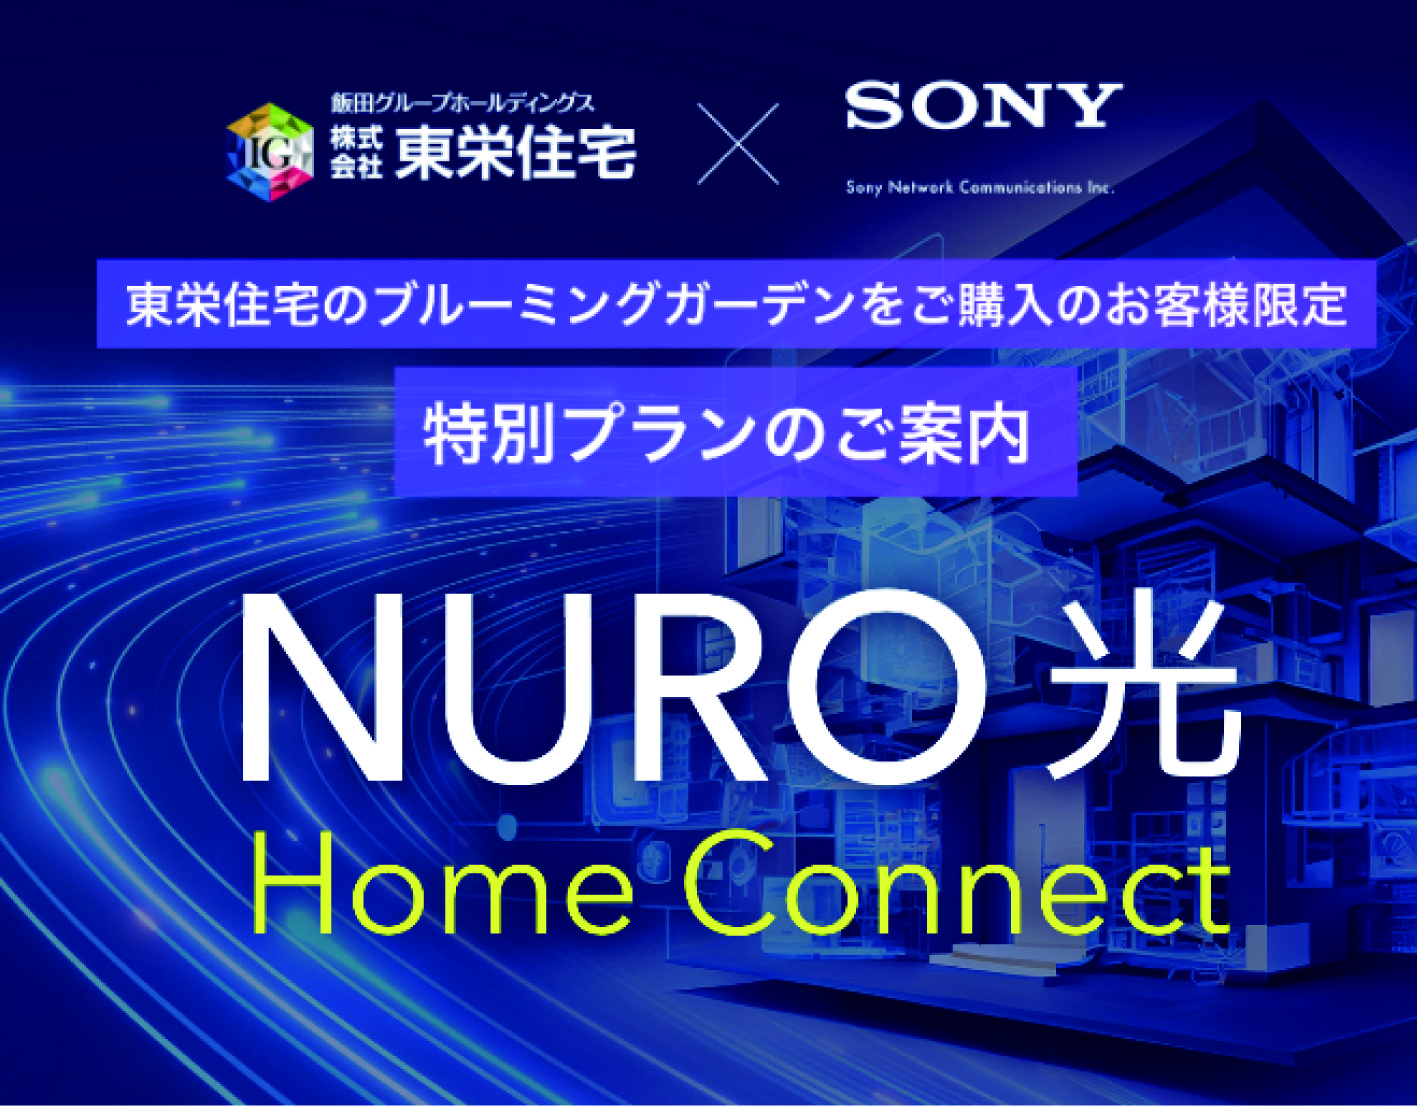 「NURO 光 Home Connect」
高速インターネットがお得に使える特別プラン対象物件